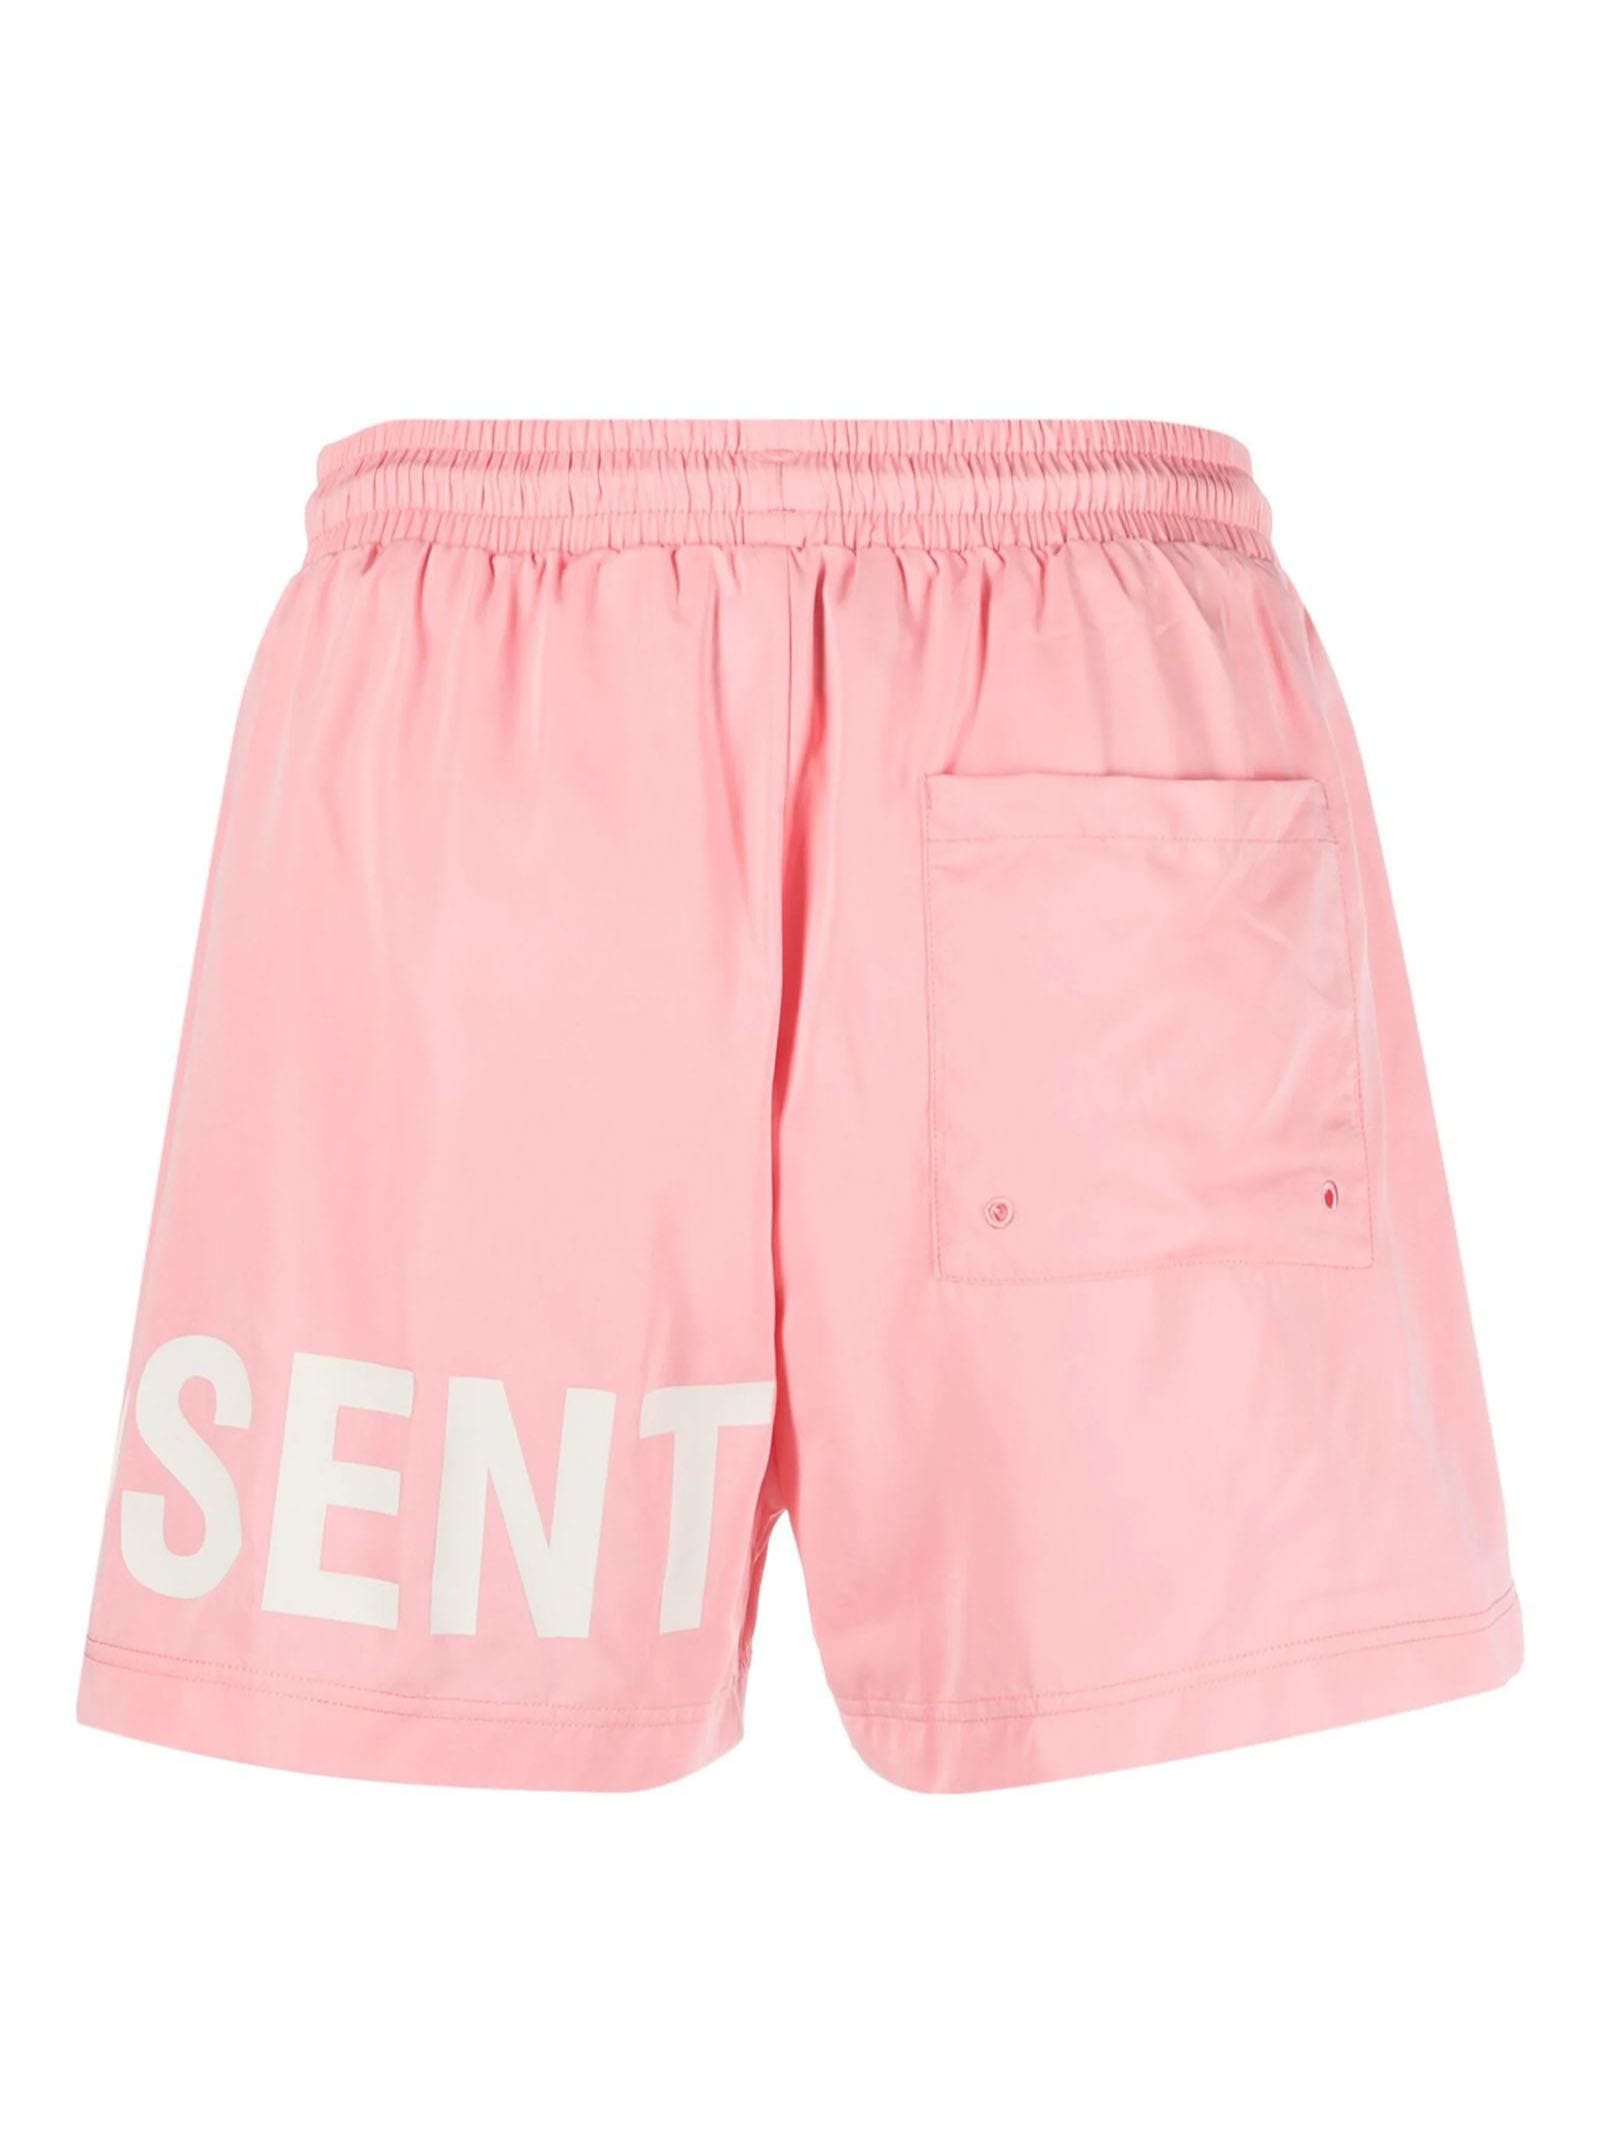 Shop Represent Sea Clothing Pink